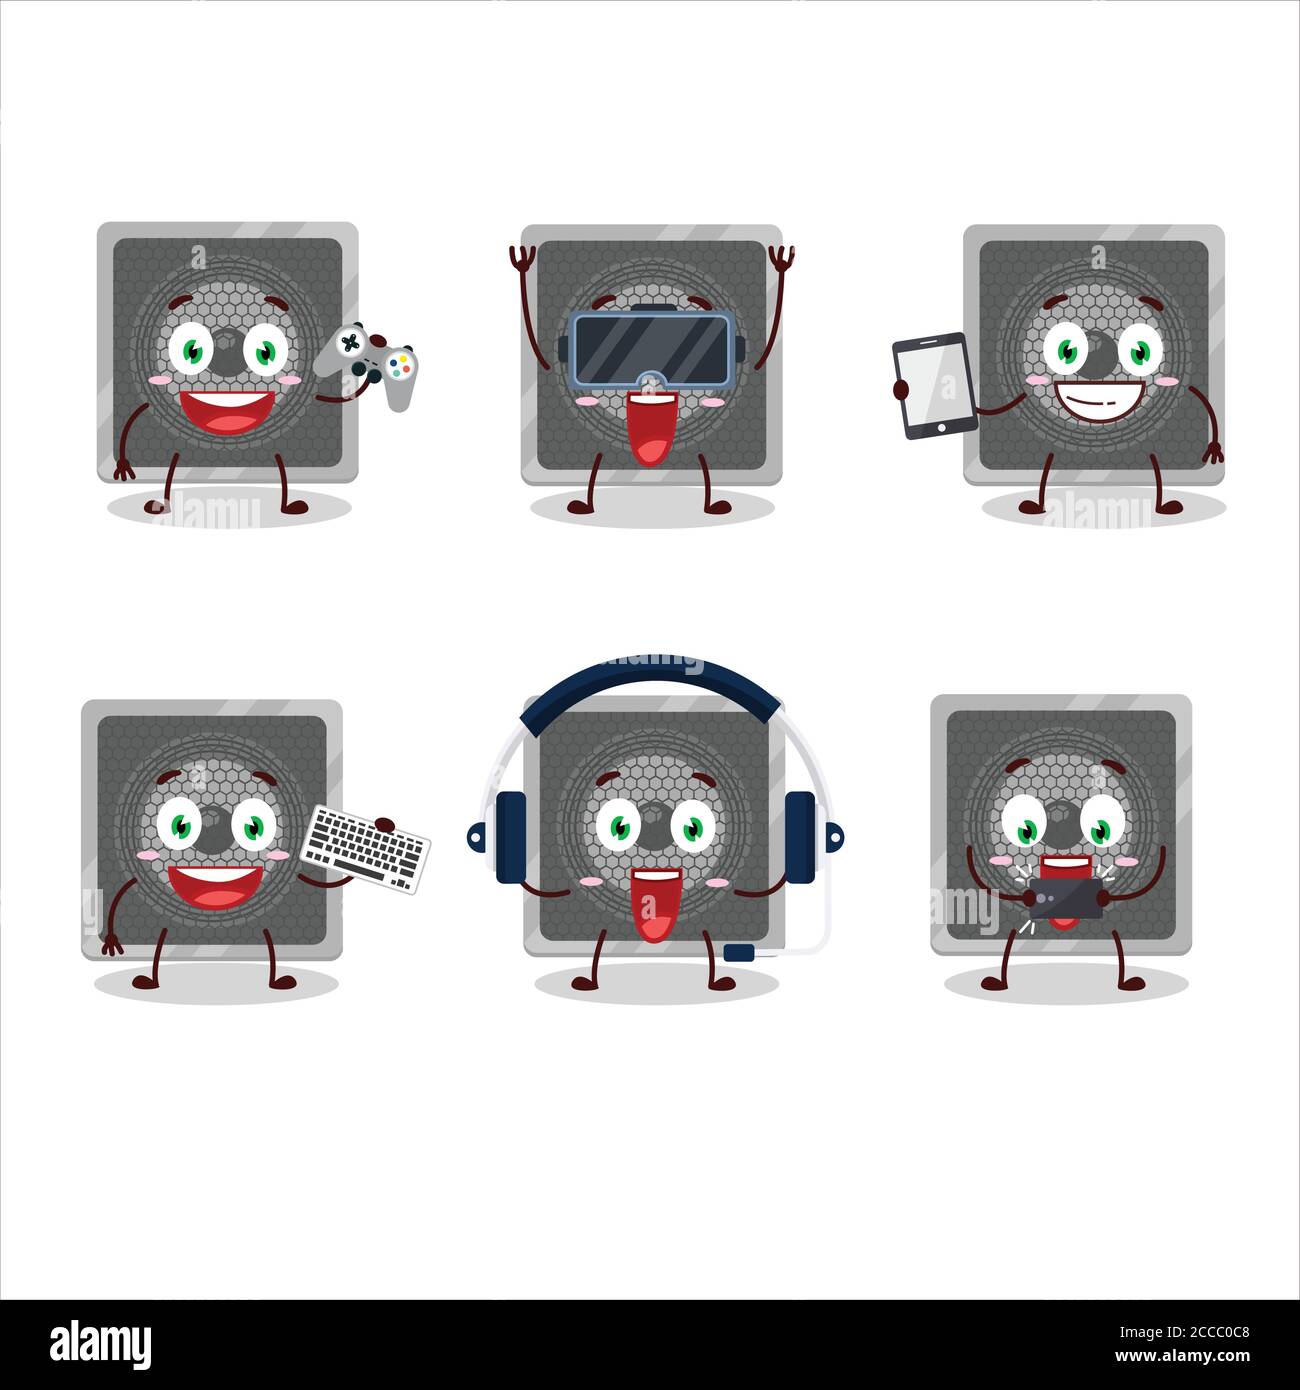 Haut-parleur de musique personnage de dessin animé jouent à des jeux avec divers mignon émoticônes Illustration de Vecteur